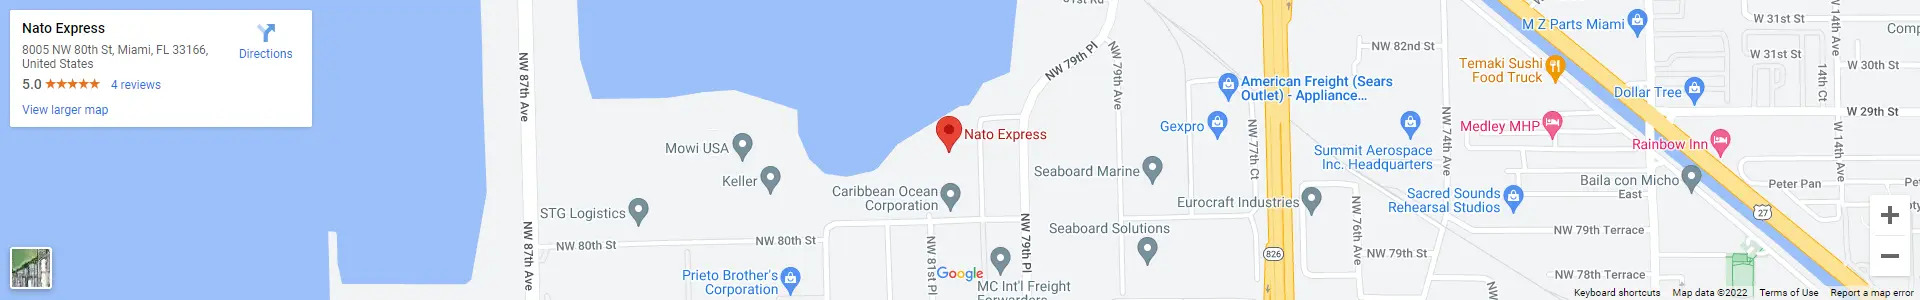 Nato Express